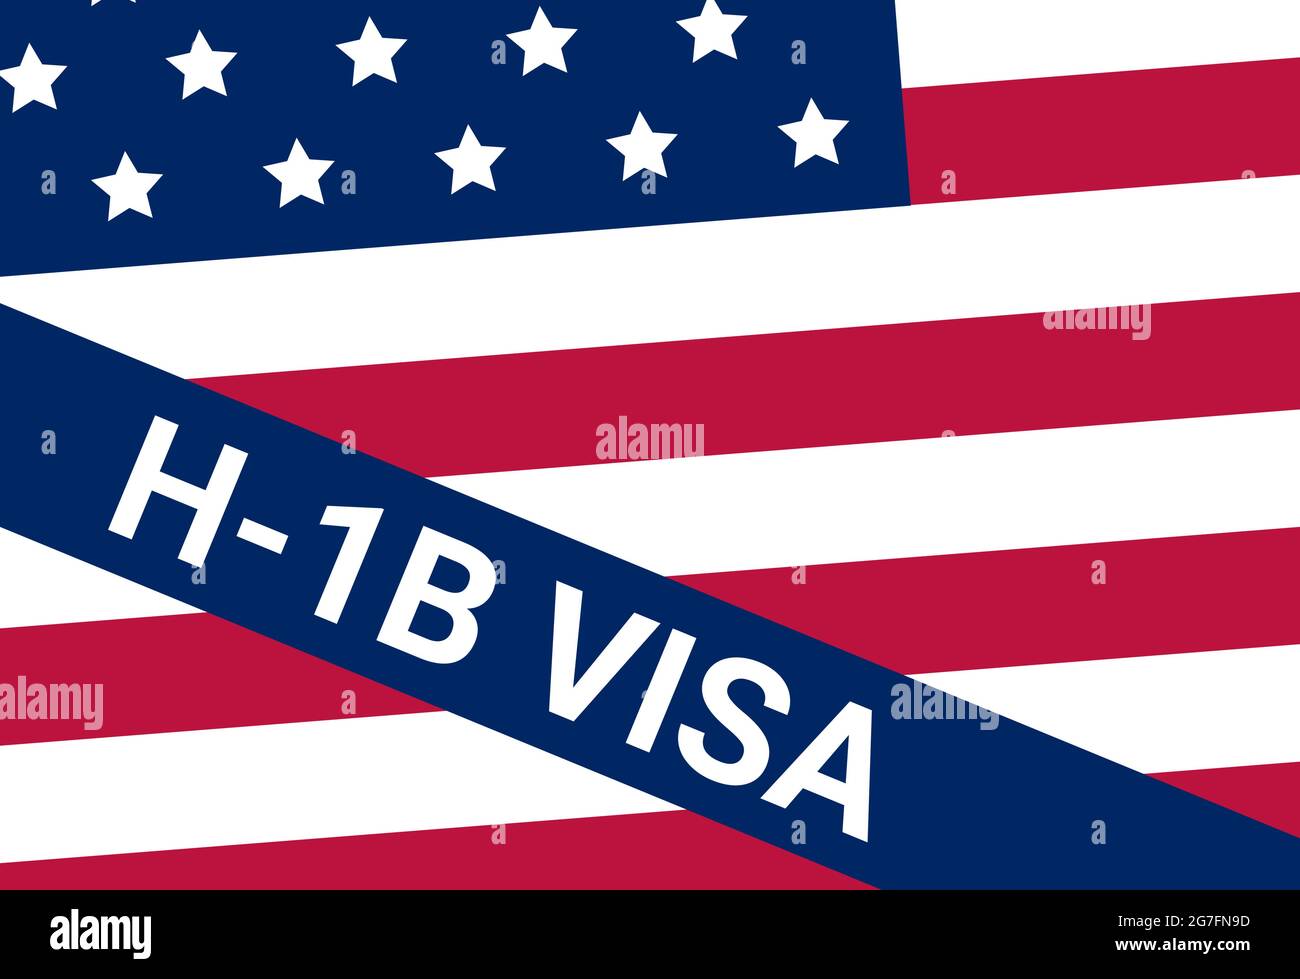 USA VIZA H-1B. Visto negli Stati Uniti lavoro temporaneo per lavoratori stranieri qualificati in attività specialistiche. Illustrazione Vettoriale